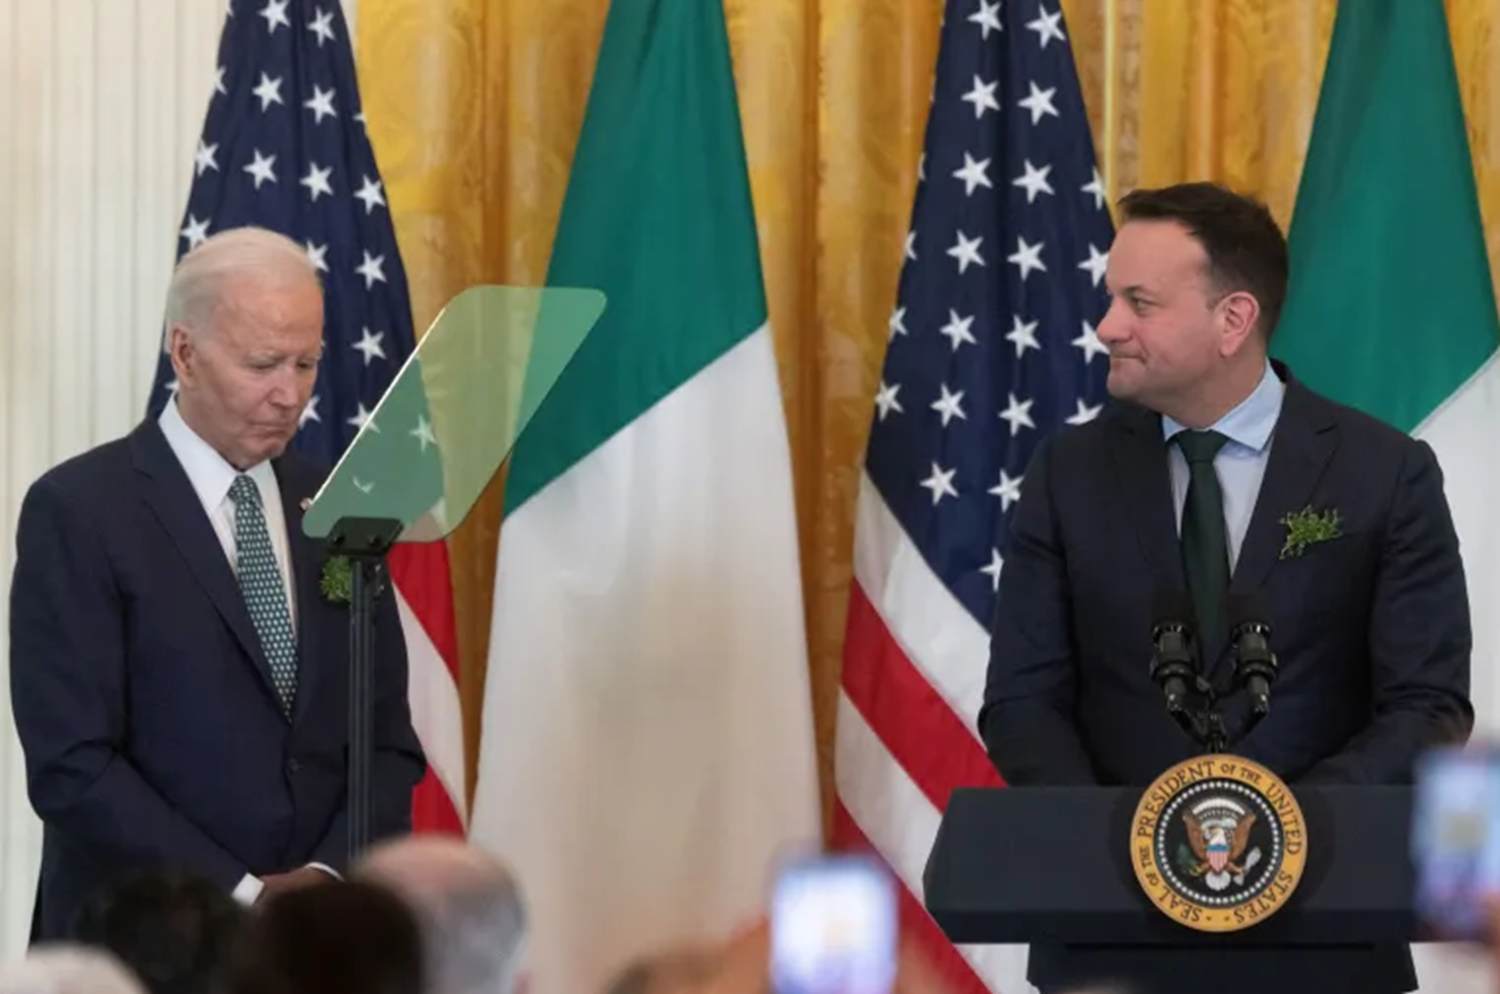 Le Premier Ministre Irlandais surprend et interpelle Joe Biden sur la situation à Gaza